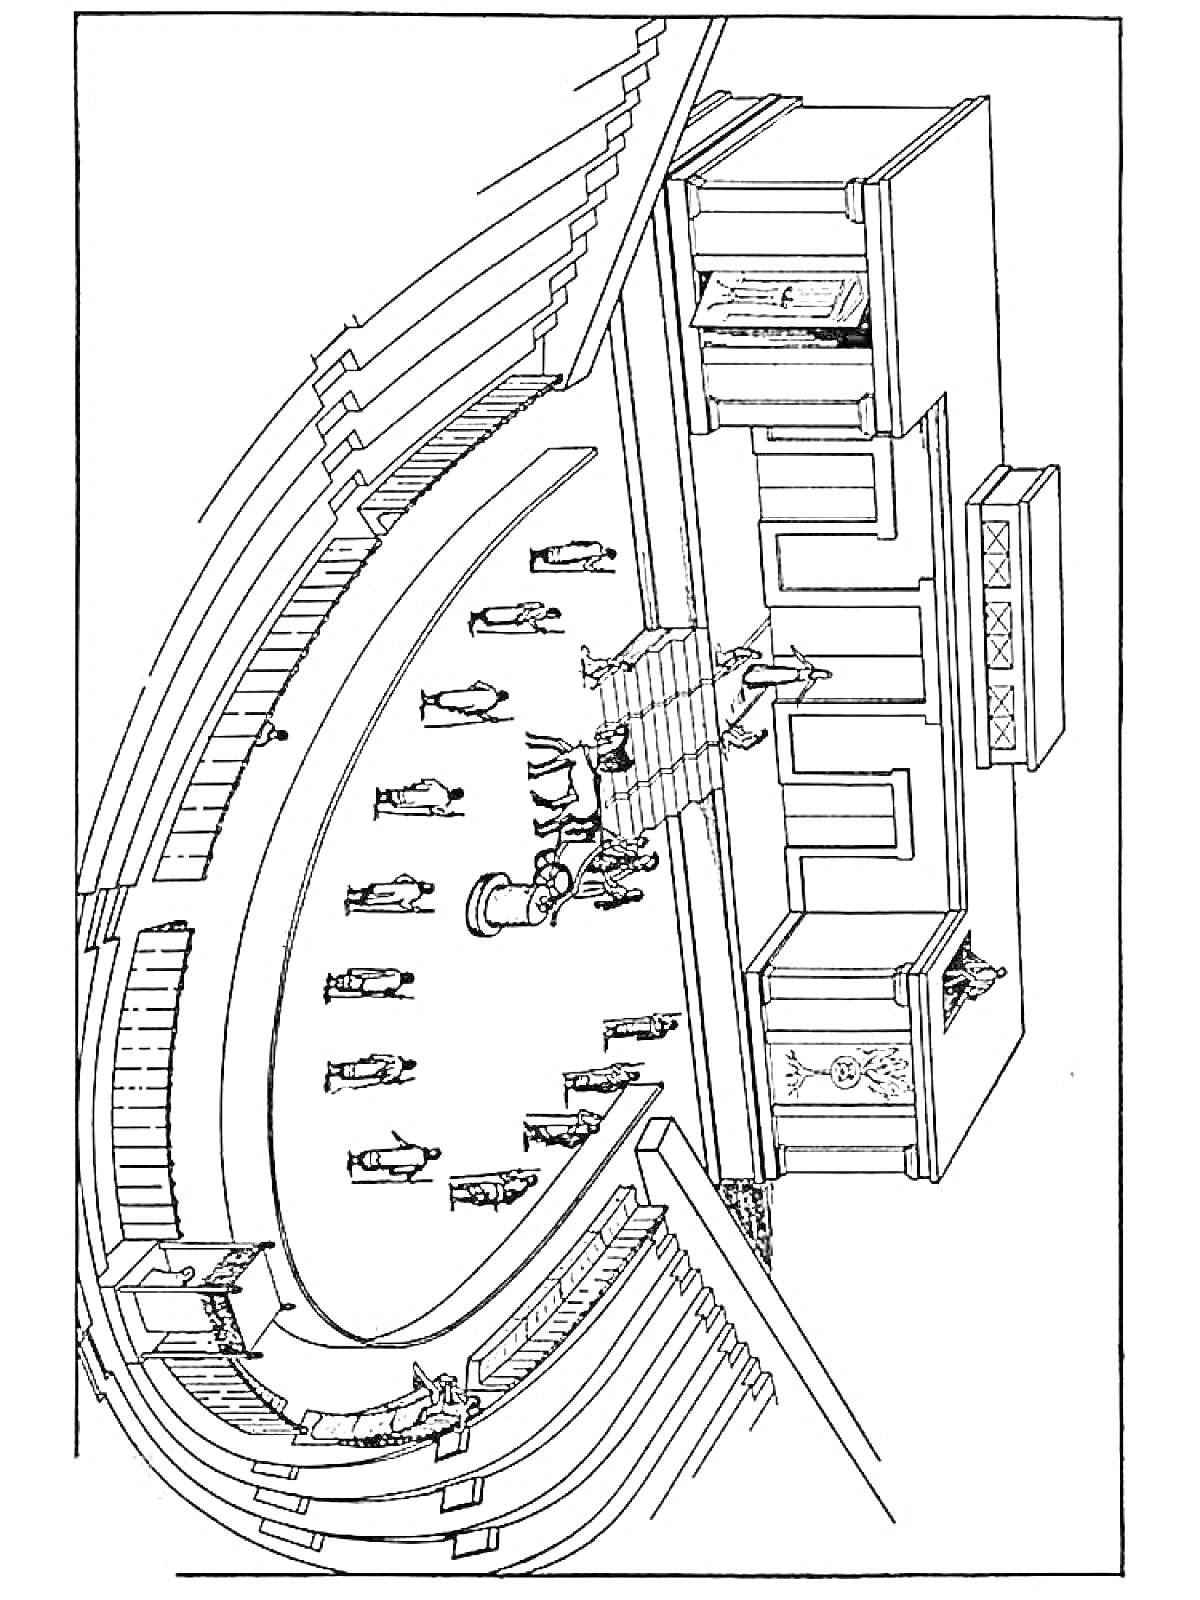 Театр в Древней Греции с колоннадой и зрительскими рядами